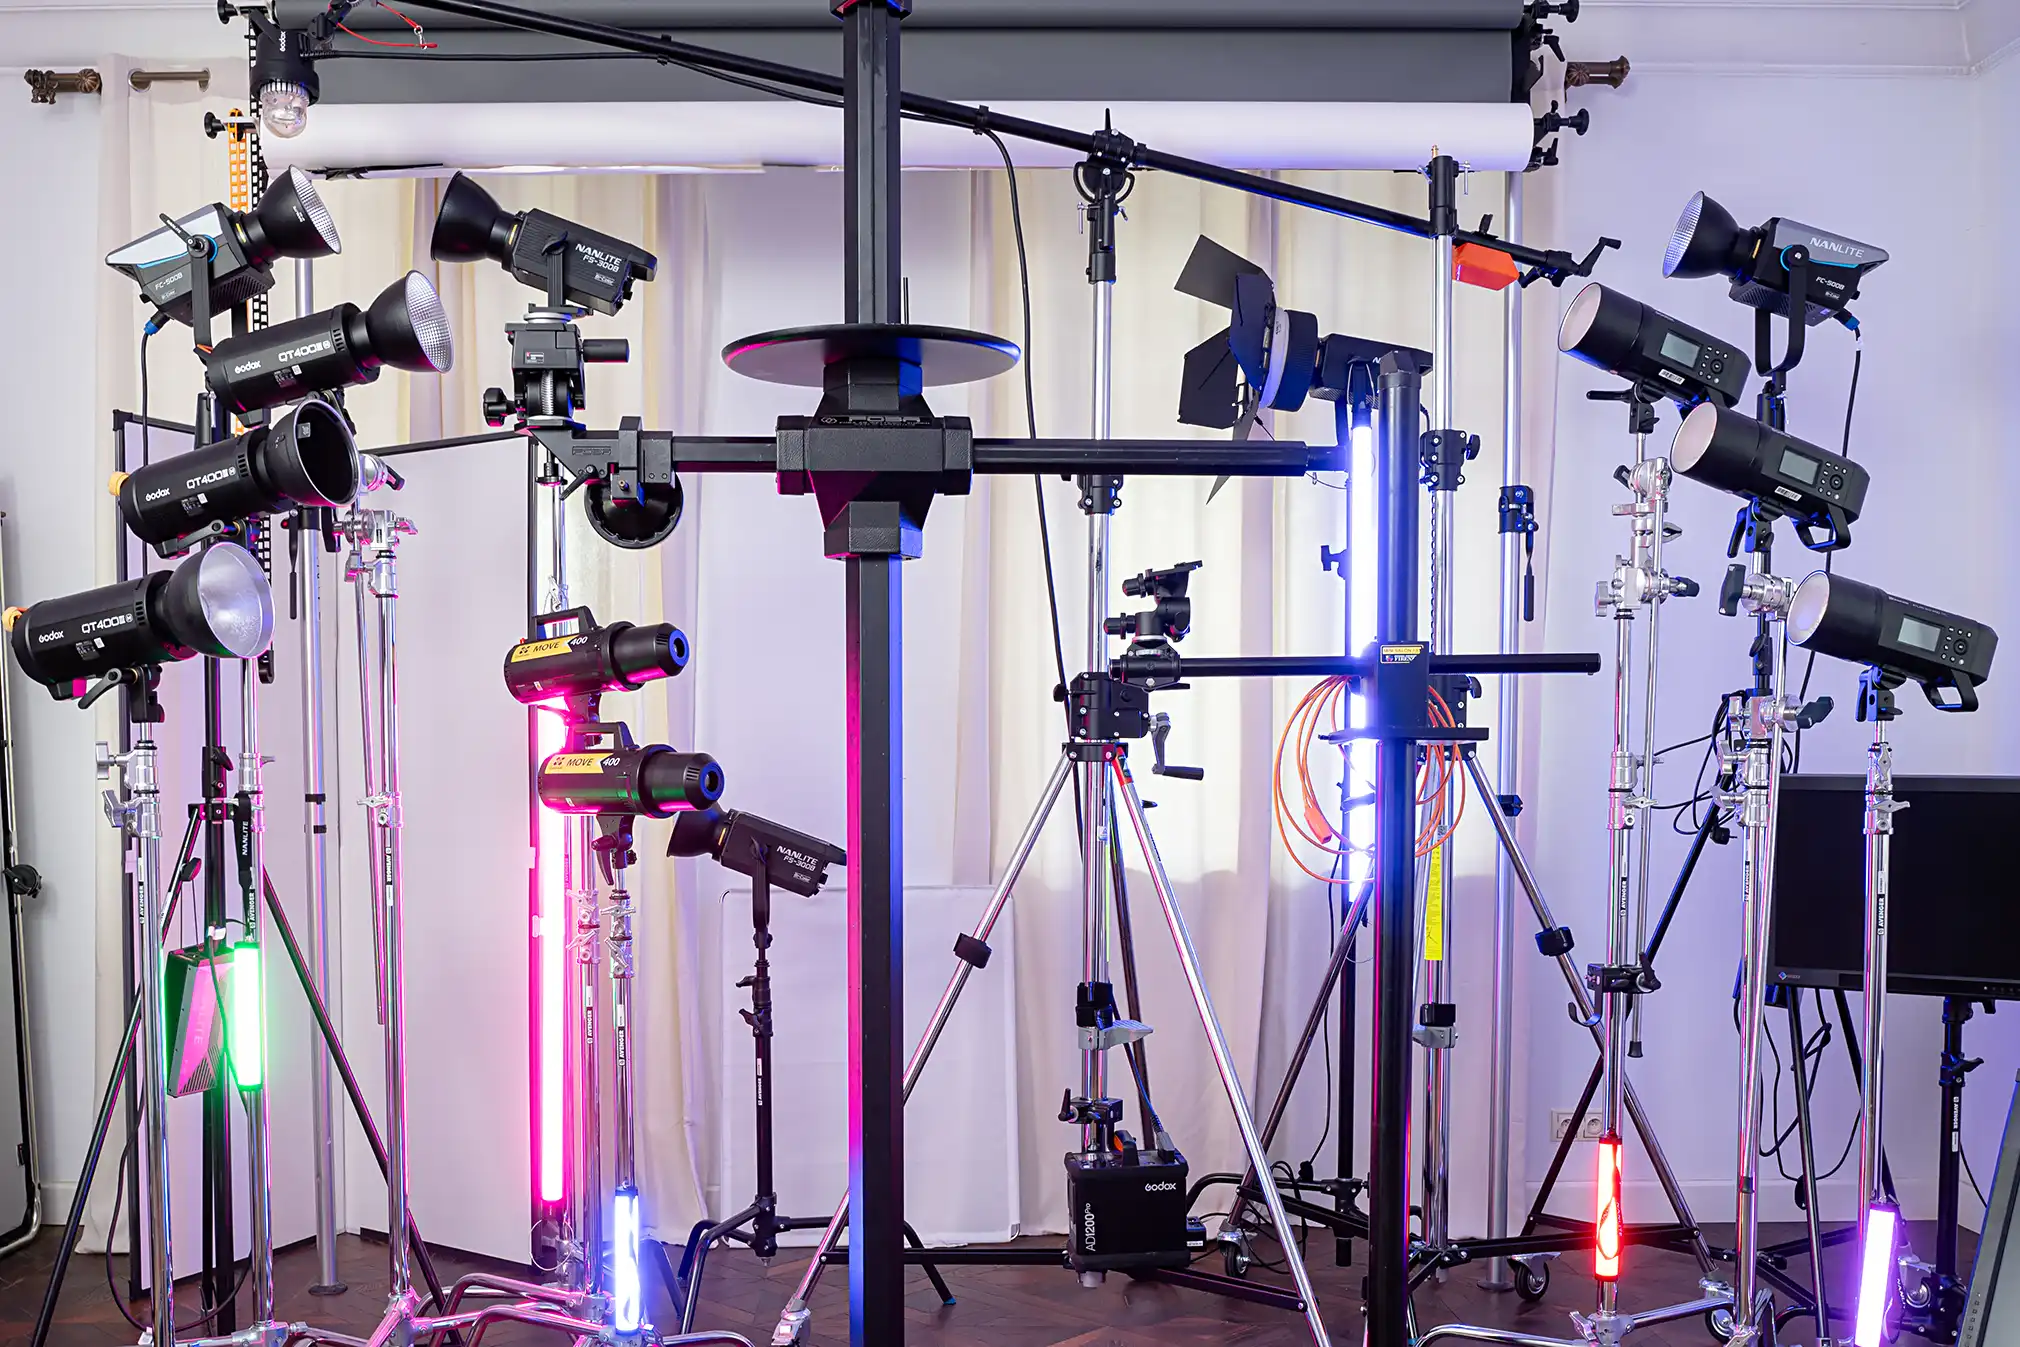 Sprzęt i wyposażenie studia fotograficznego w lampy błyskowe, światło ciągłe, statywy i inne akcesoria